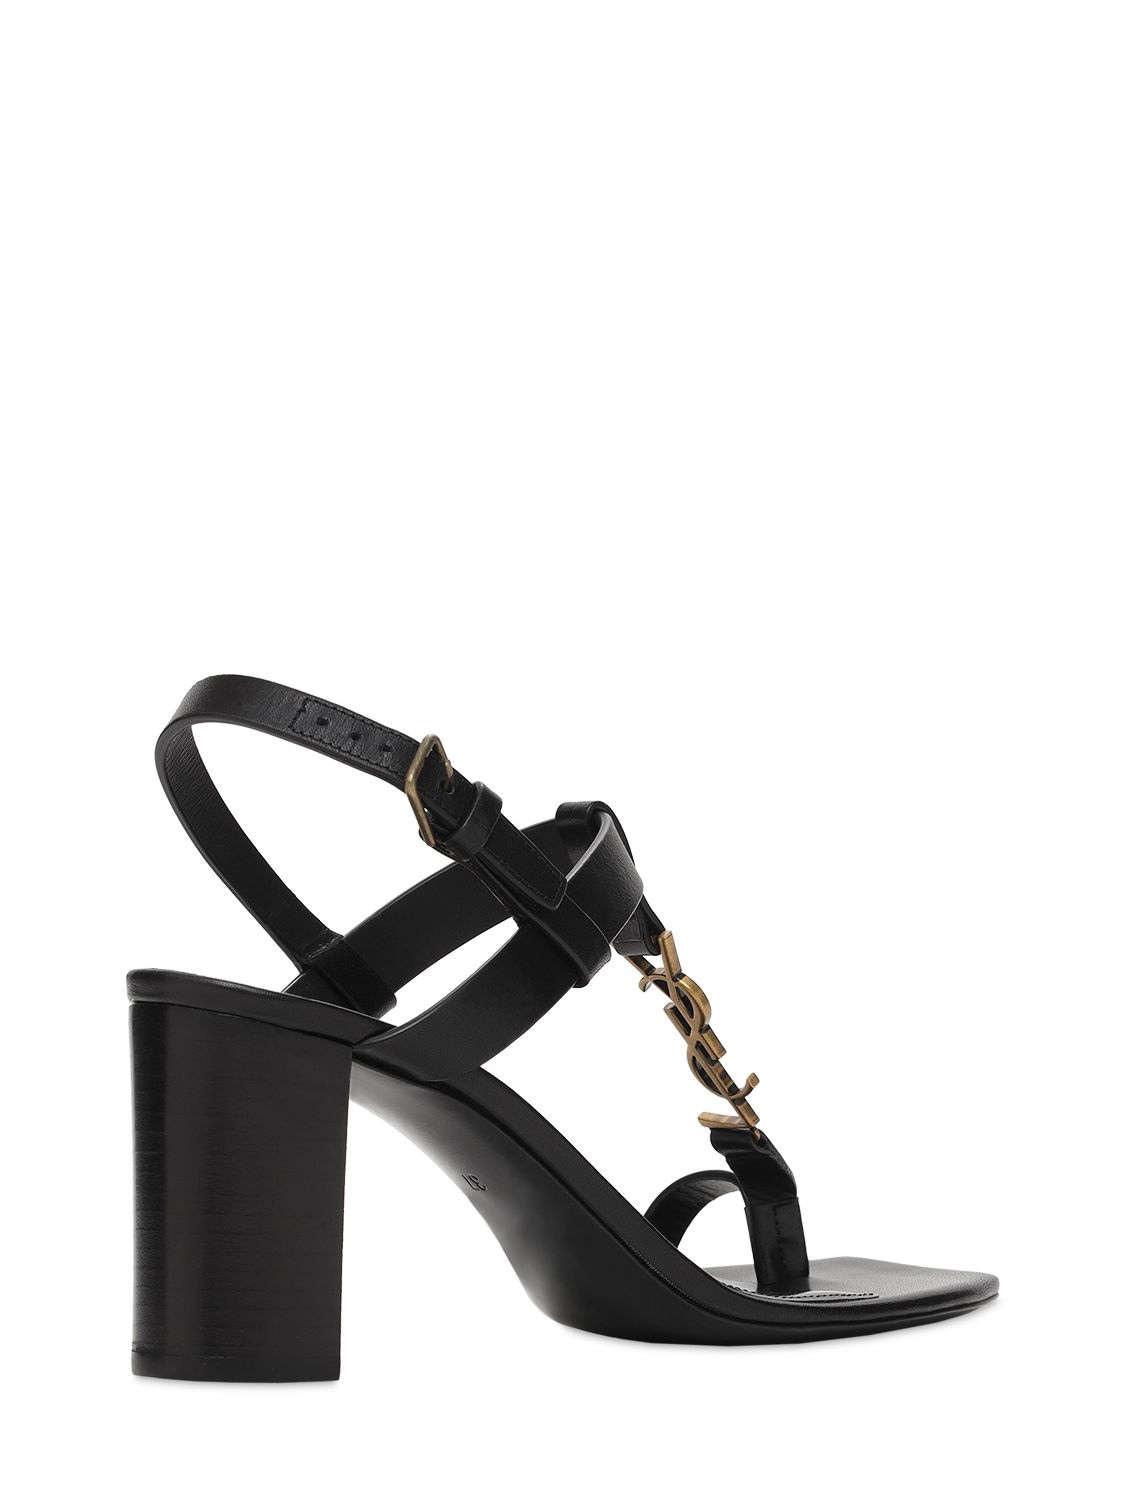 Shop Saint Laurent 75mm Cassandra Leather Sandals In Black